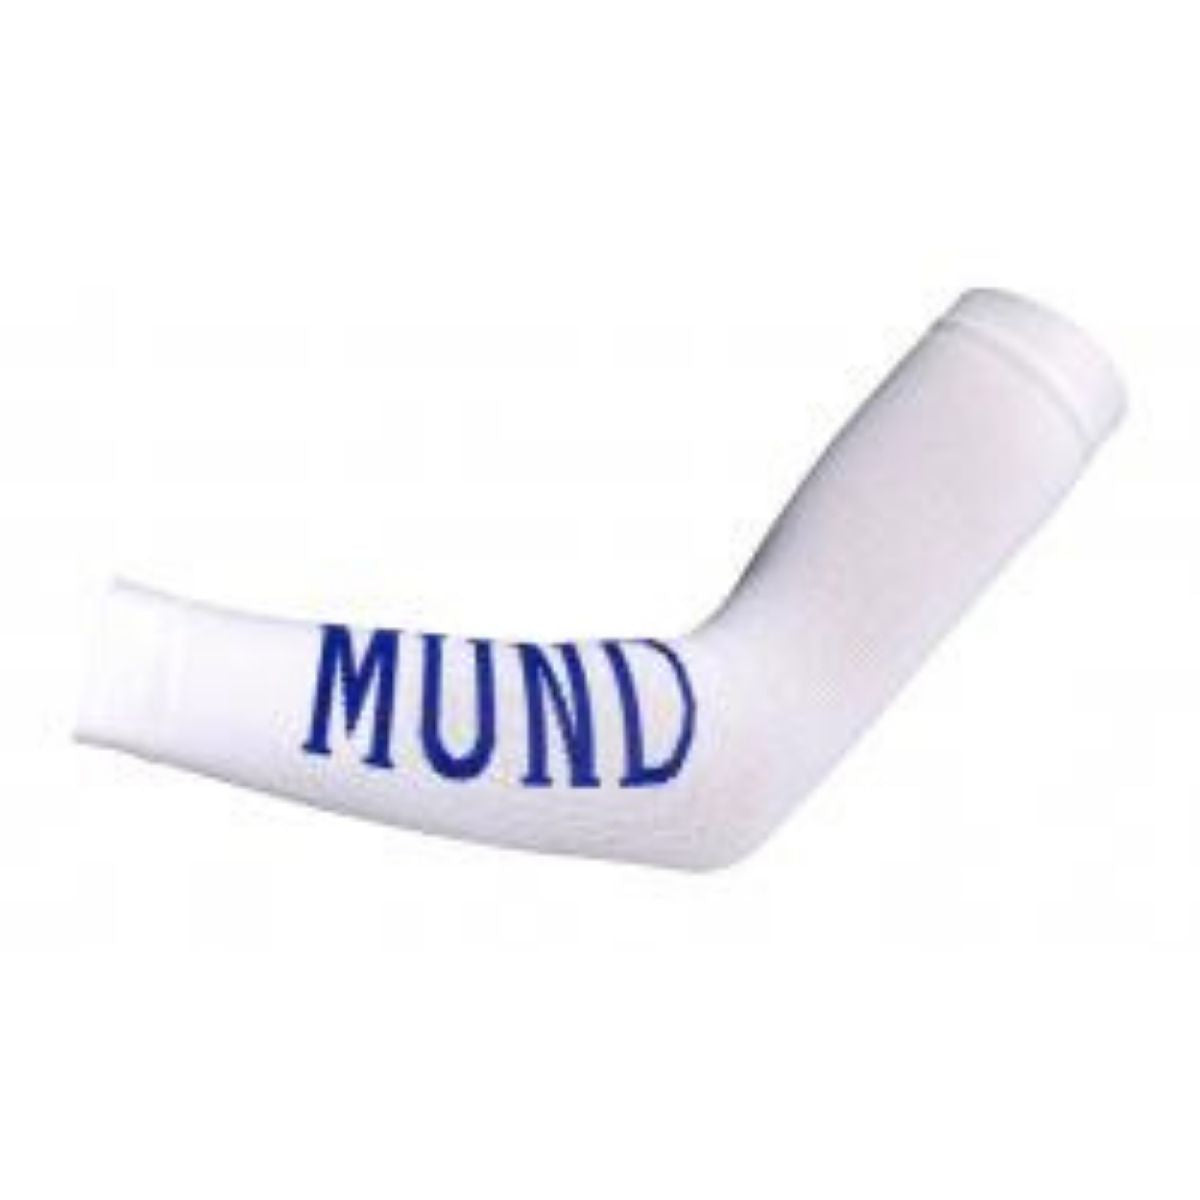 Mund Socks Manguitos Arm Sleeves Pair (White) - Outdoor Travel Gear 1